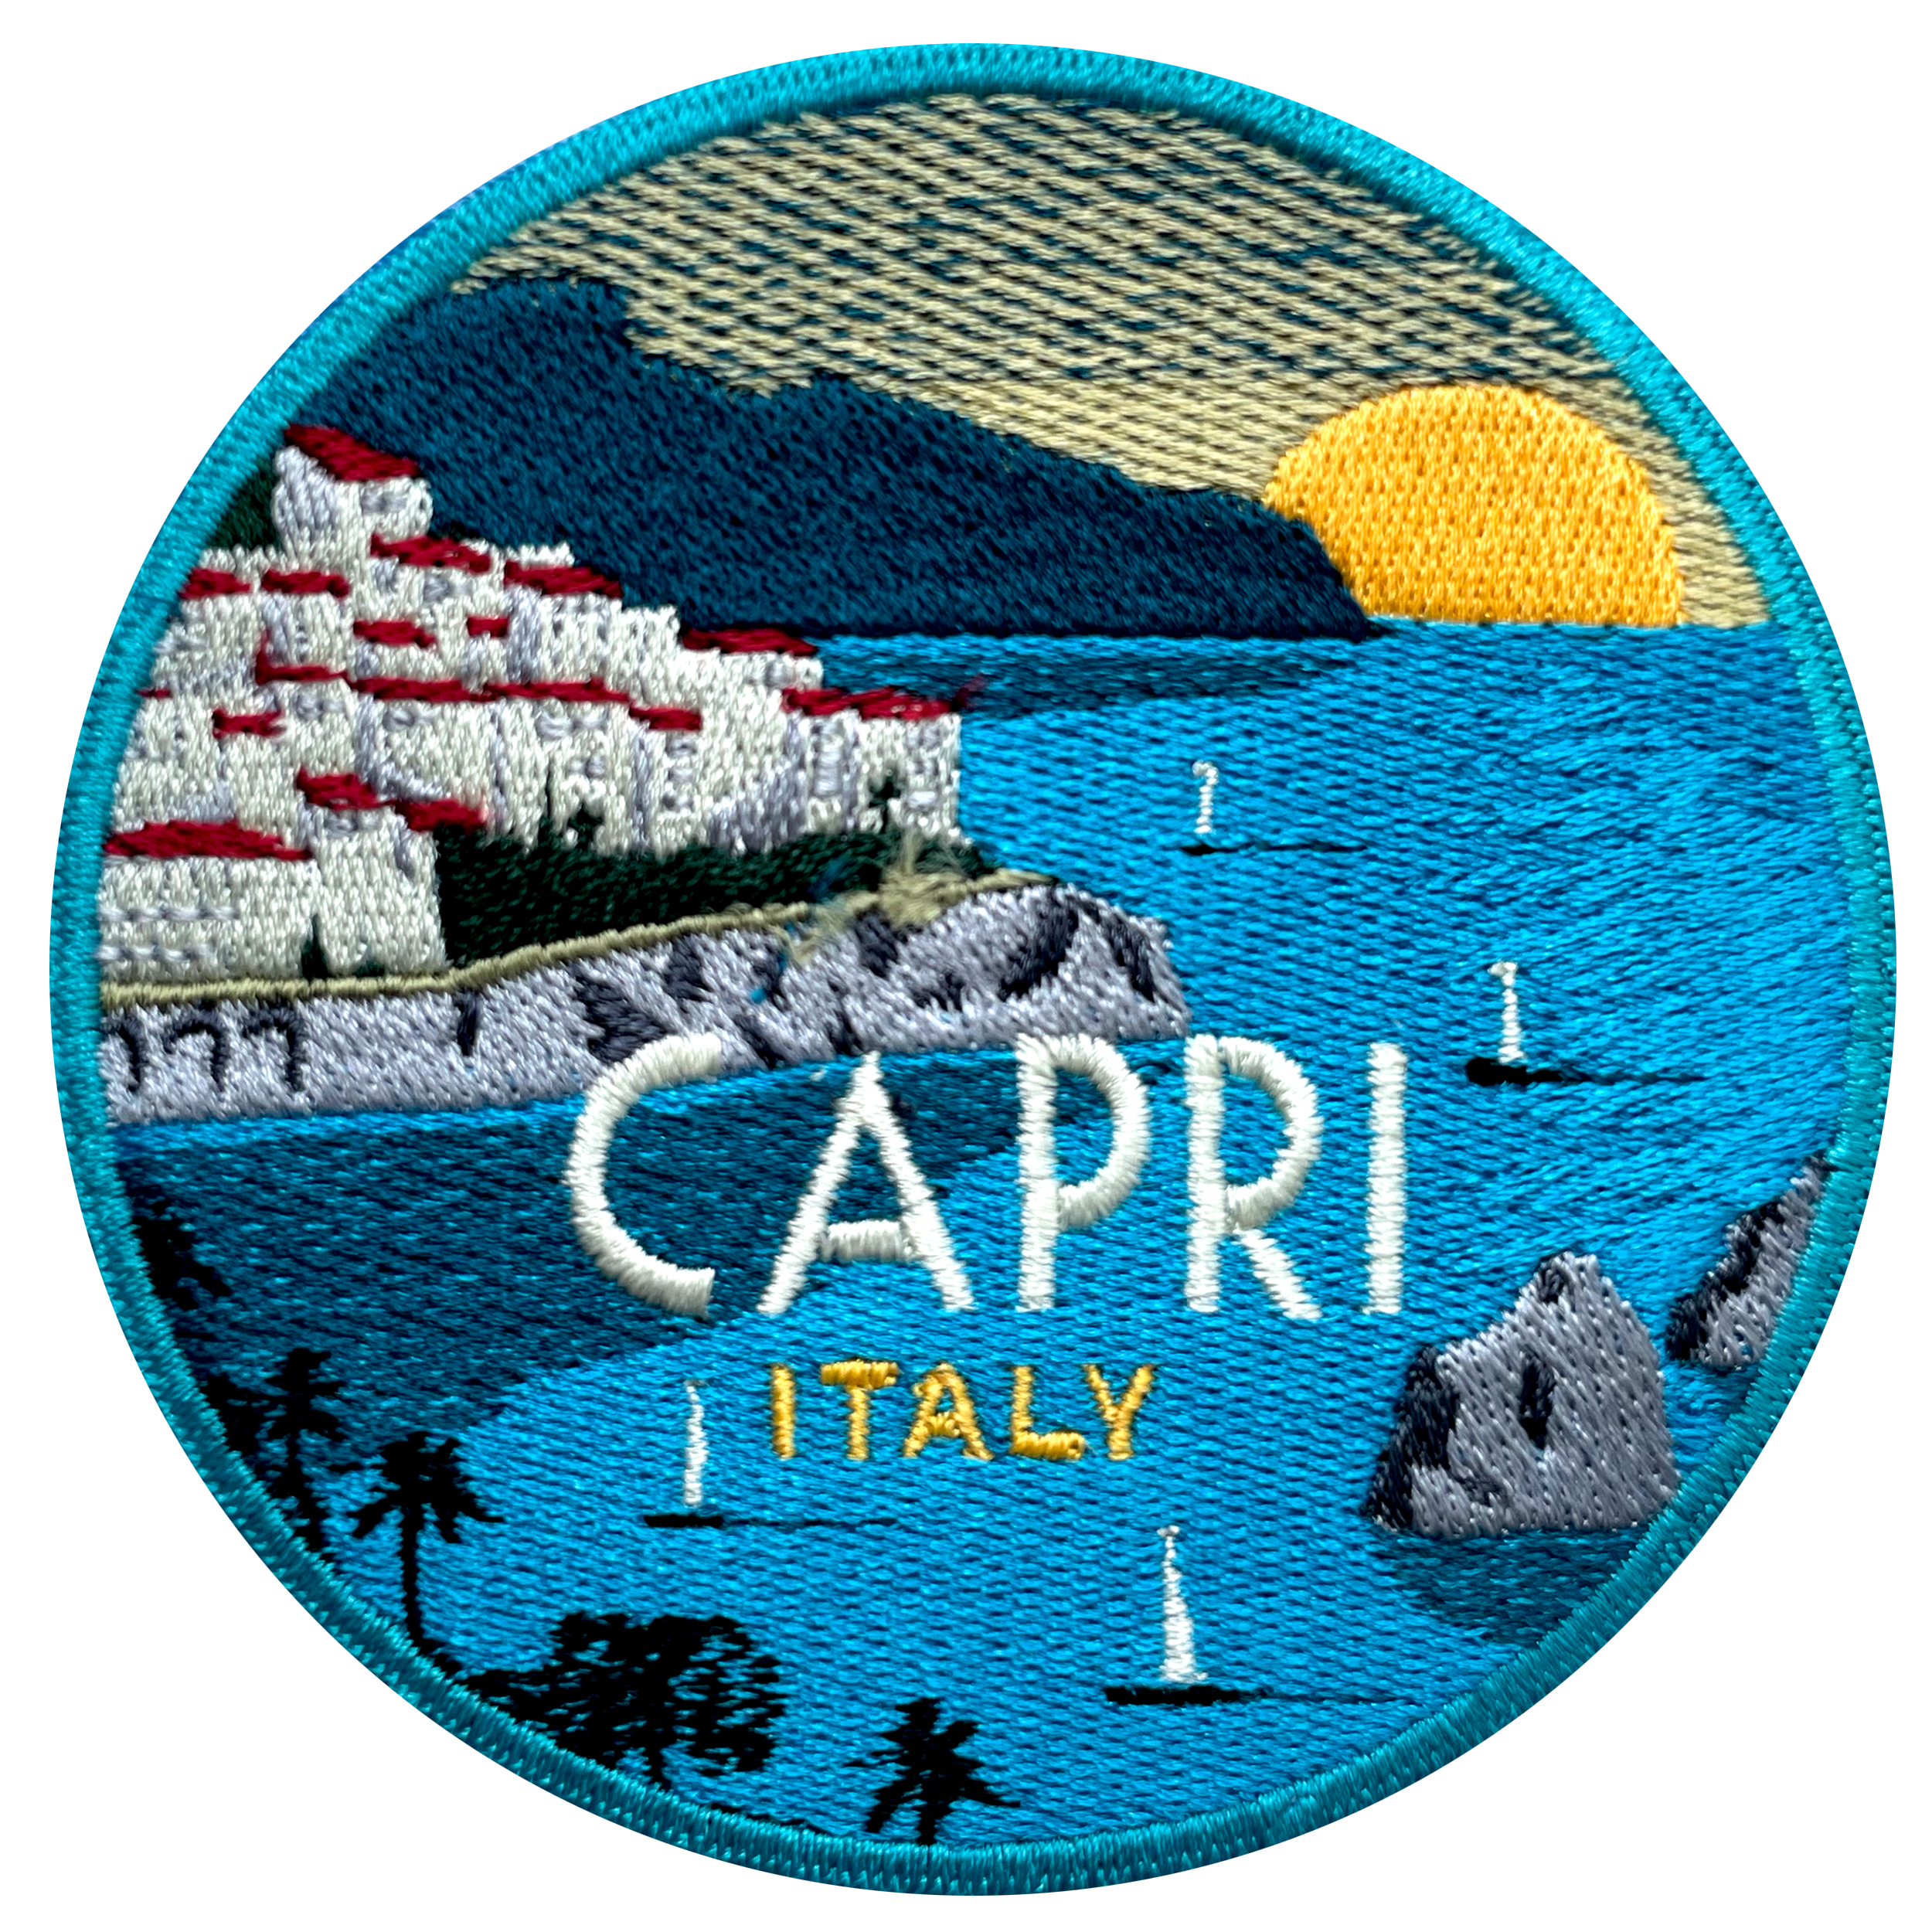 Label CAPRI